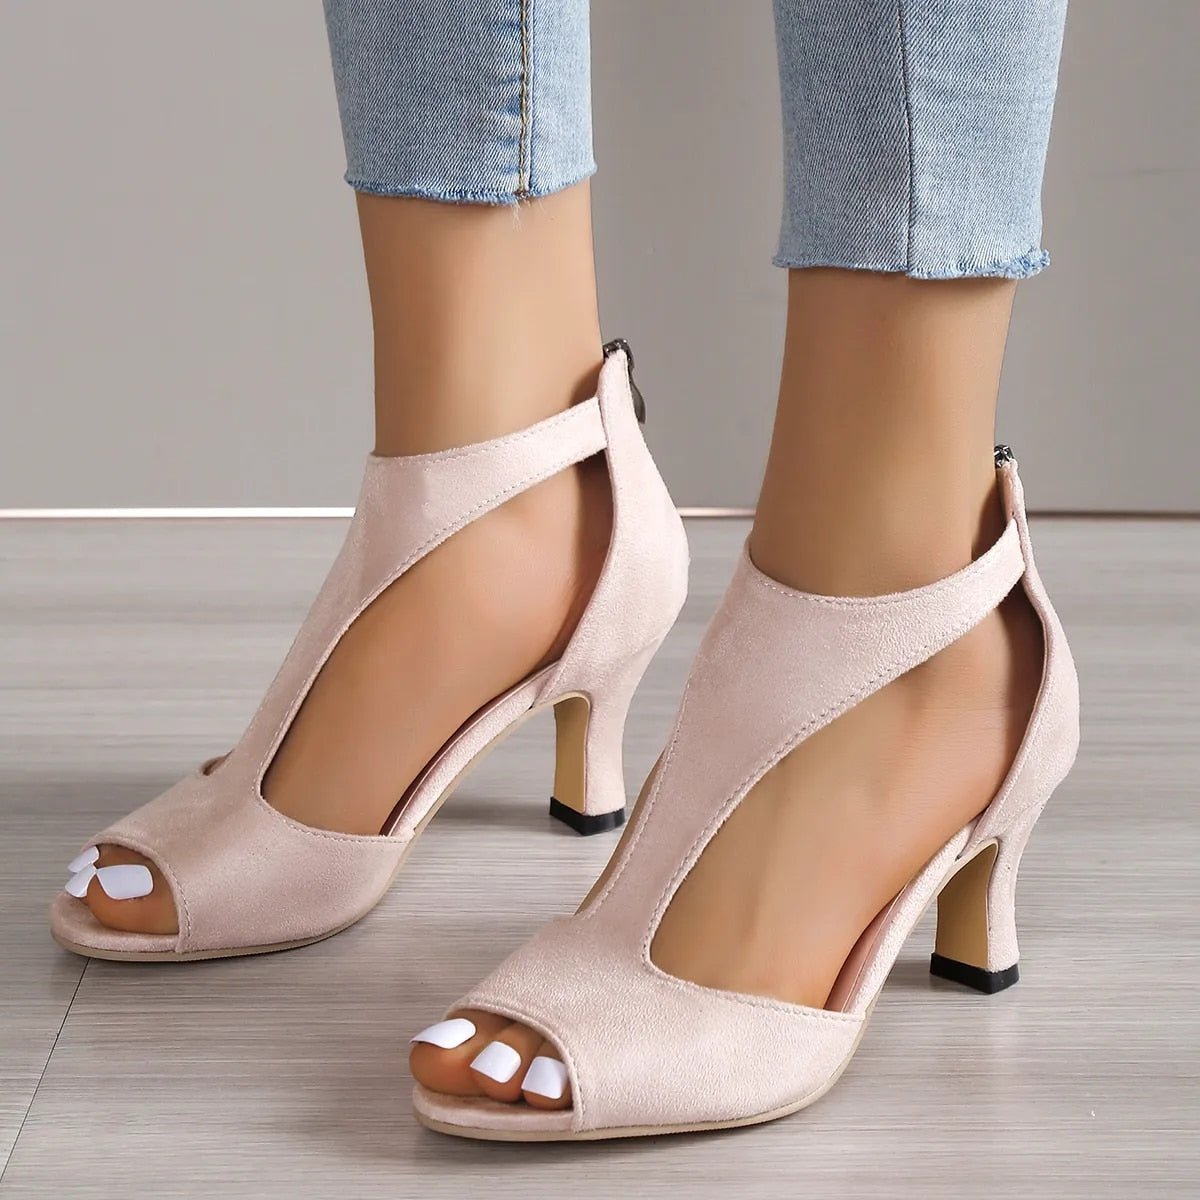 Stylish Fishmouth Sandals | Zipper Stiletto Shoes - - Women - Shoes - Milvertons